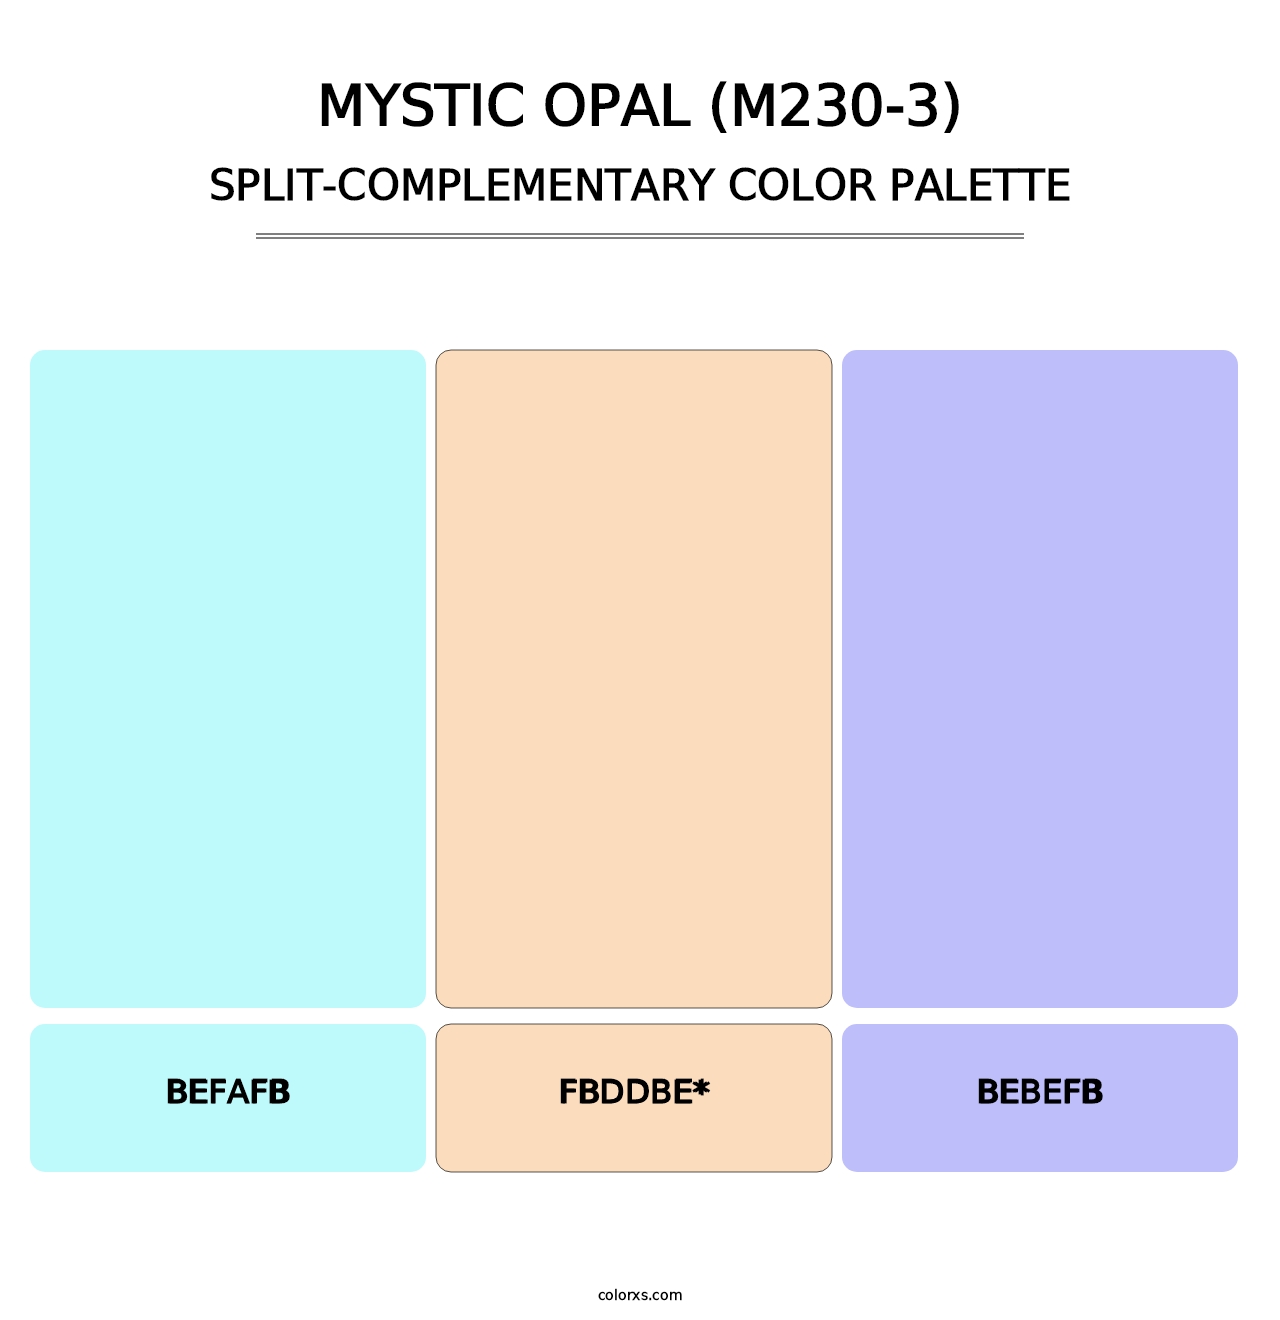 Mystic Opal (M230-3) - Split-Complementary Color Palette